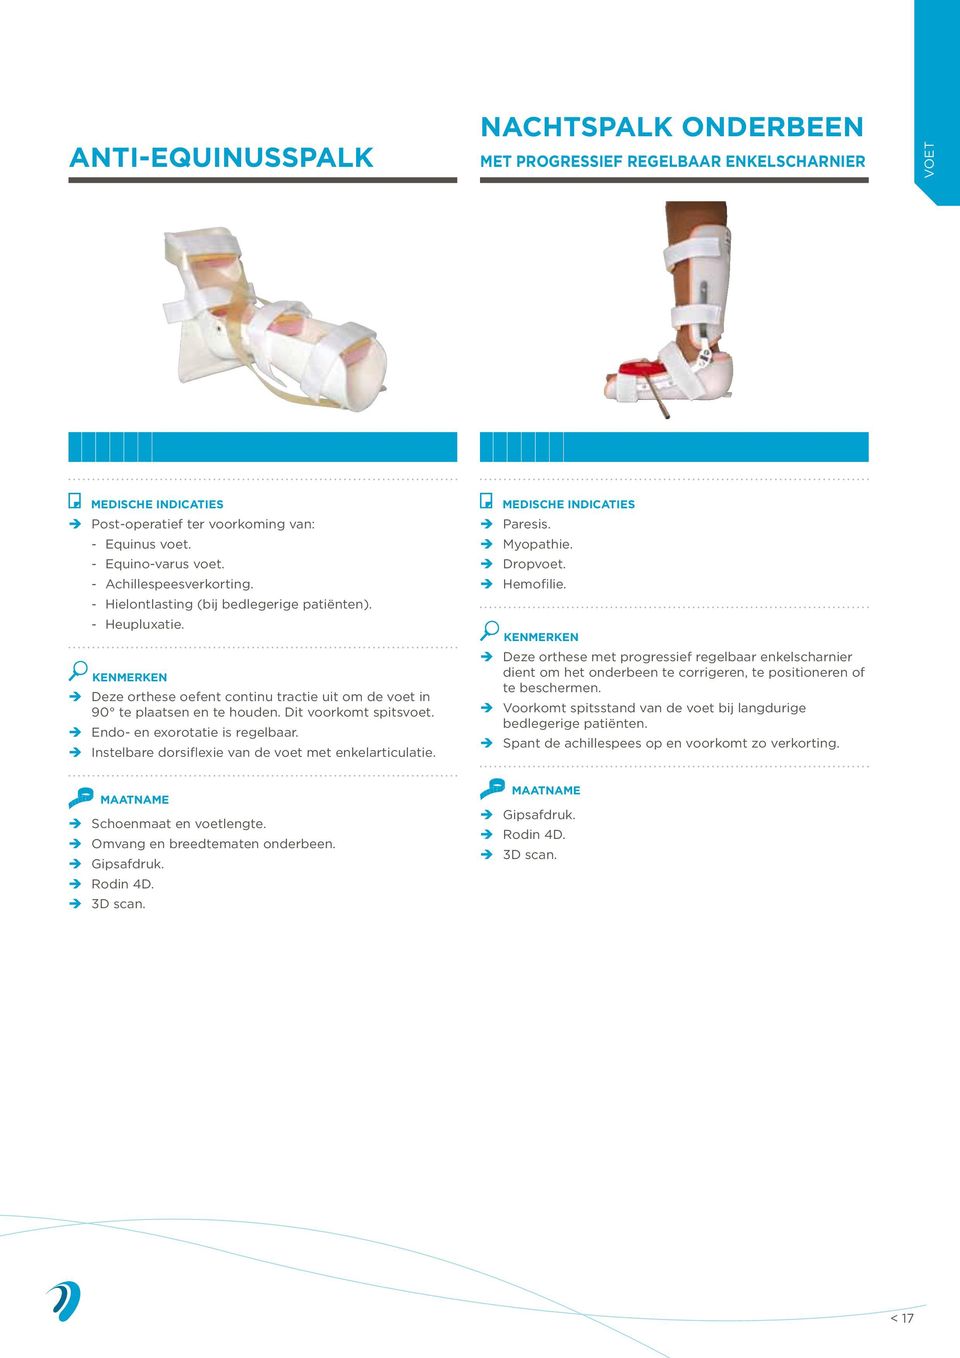 Endo- en exorotatie is regelbaar. Instelbare dorsiflexie van de voet met enkelarticulatie. Paresis. Myopathie. Dropvoet. Hemofilie.